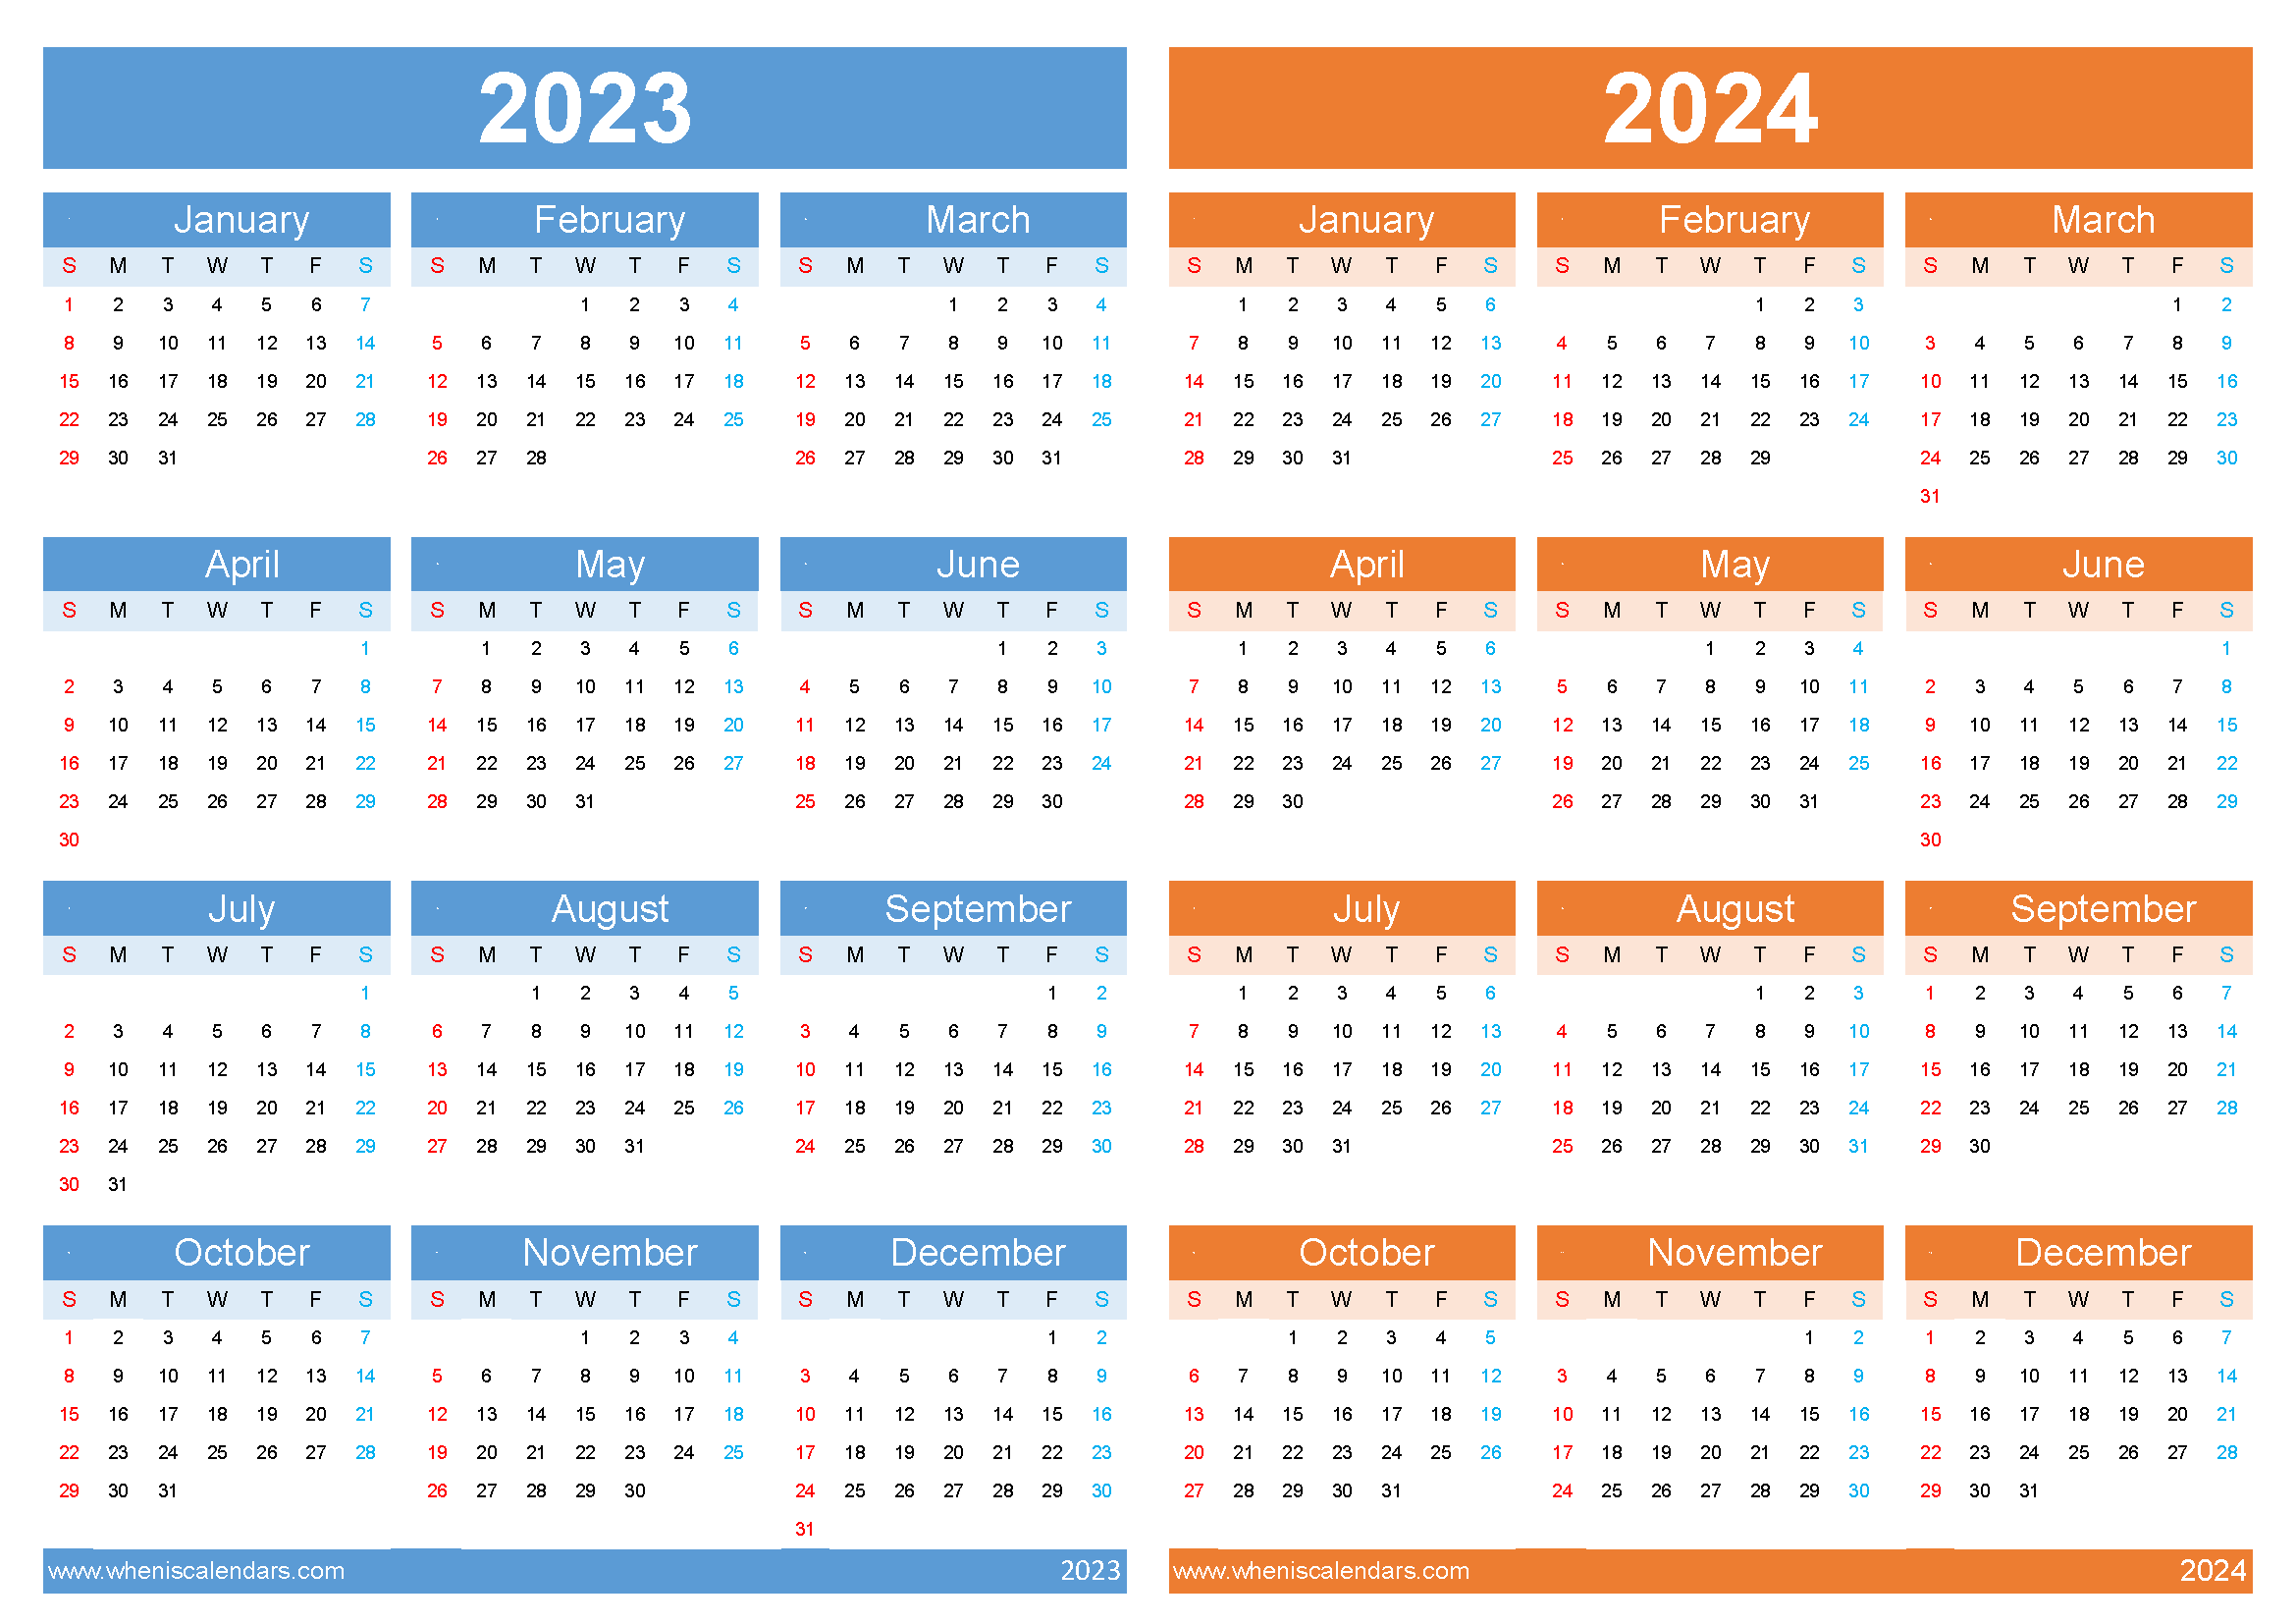 2023 2024 calendar template 34Y01